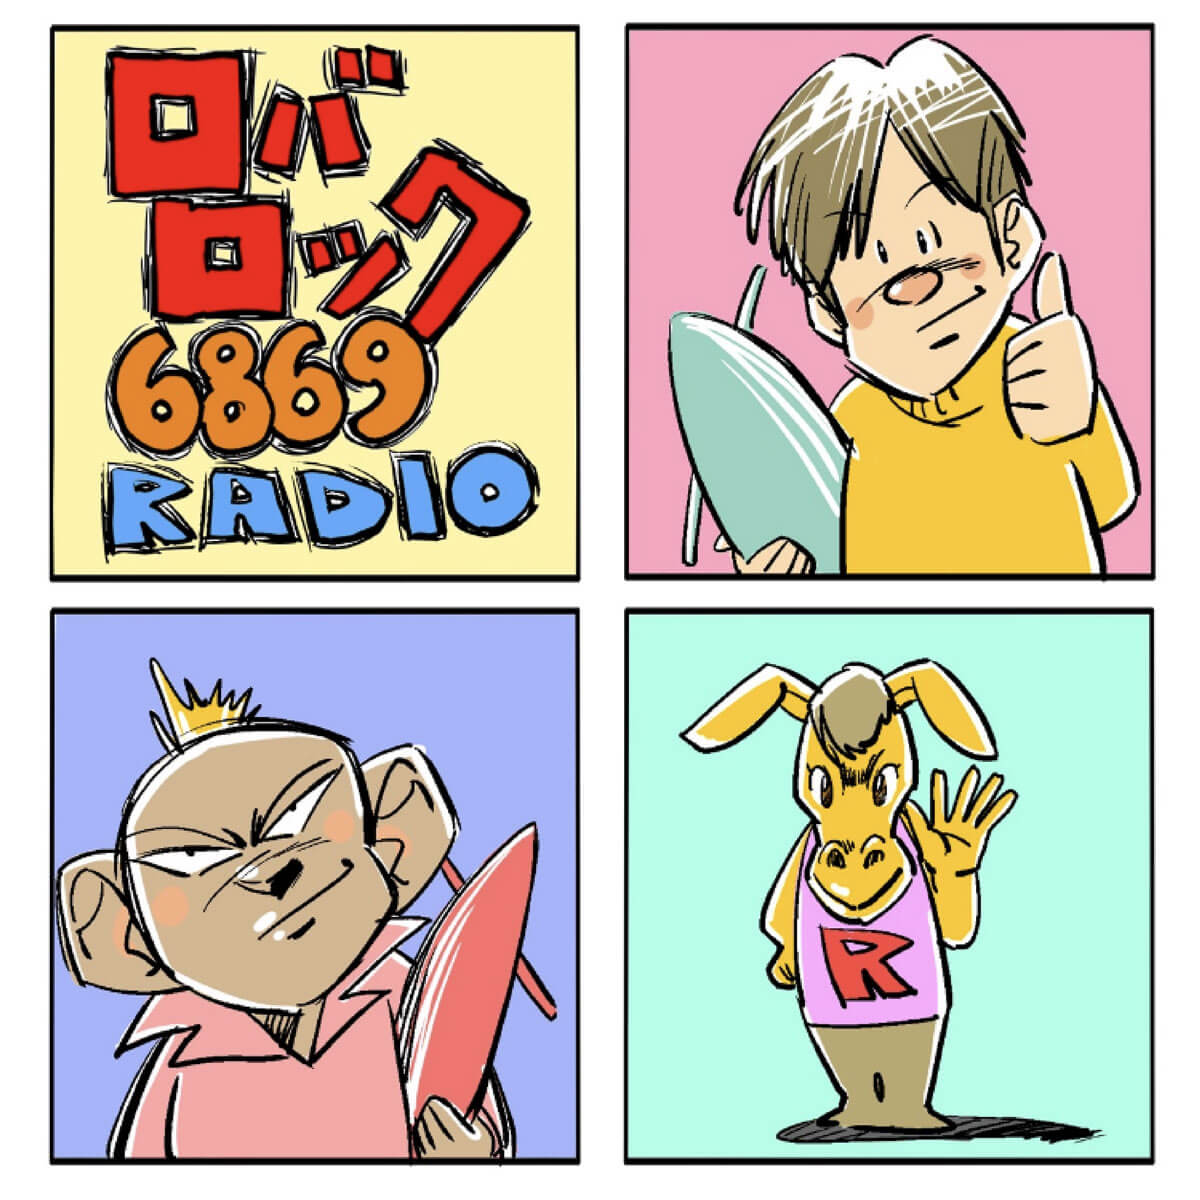 吉田照美が書き下ろしているweb4コマ漫画の魅力をお届け！Podcast新番組『ロバロック6869RADIO』、5月14日（土）より隔週土曜日に配信中